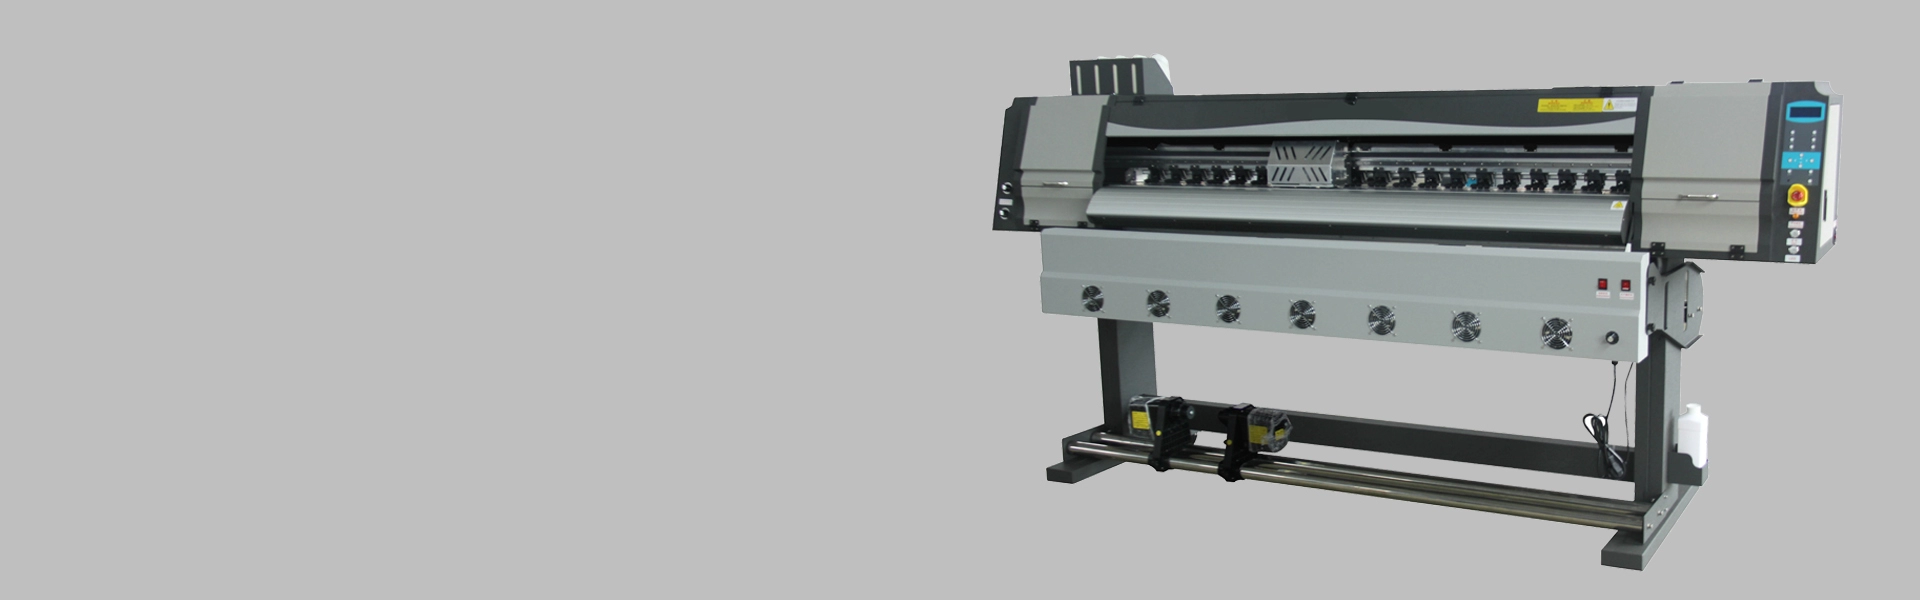 1,8-метровая сублимационная печатная машина GZ180